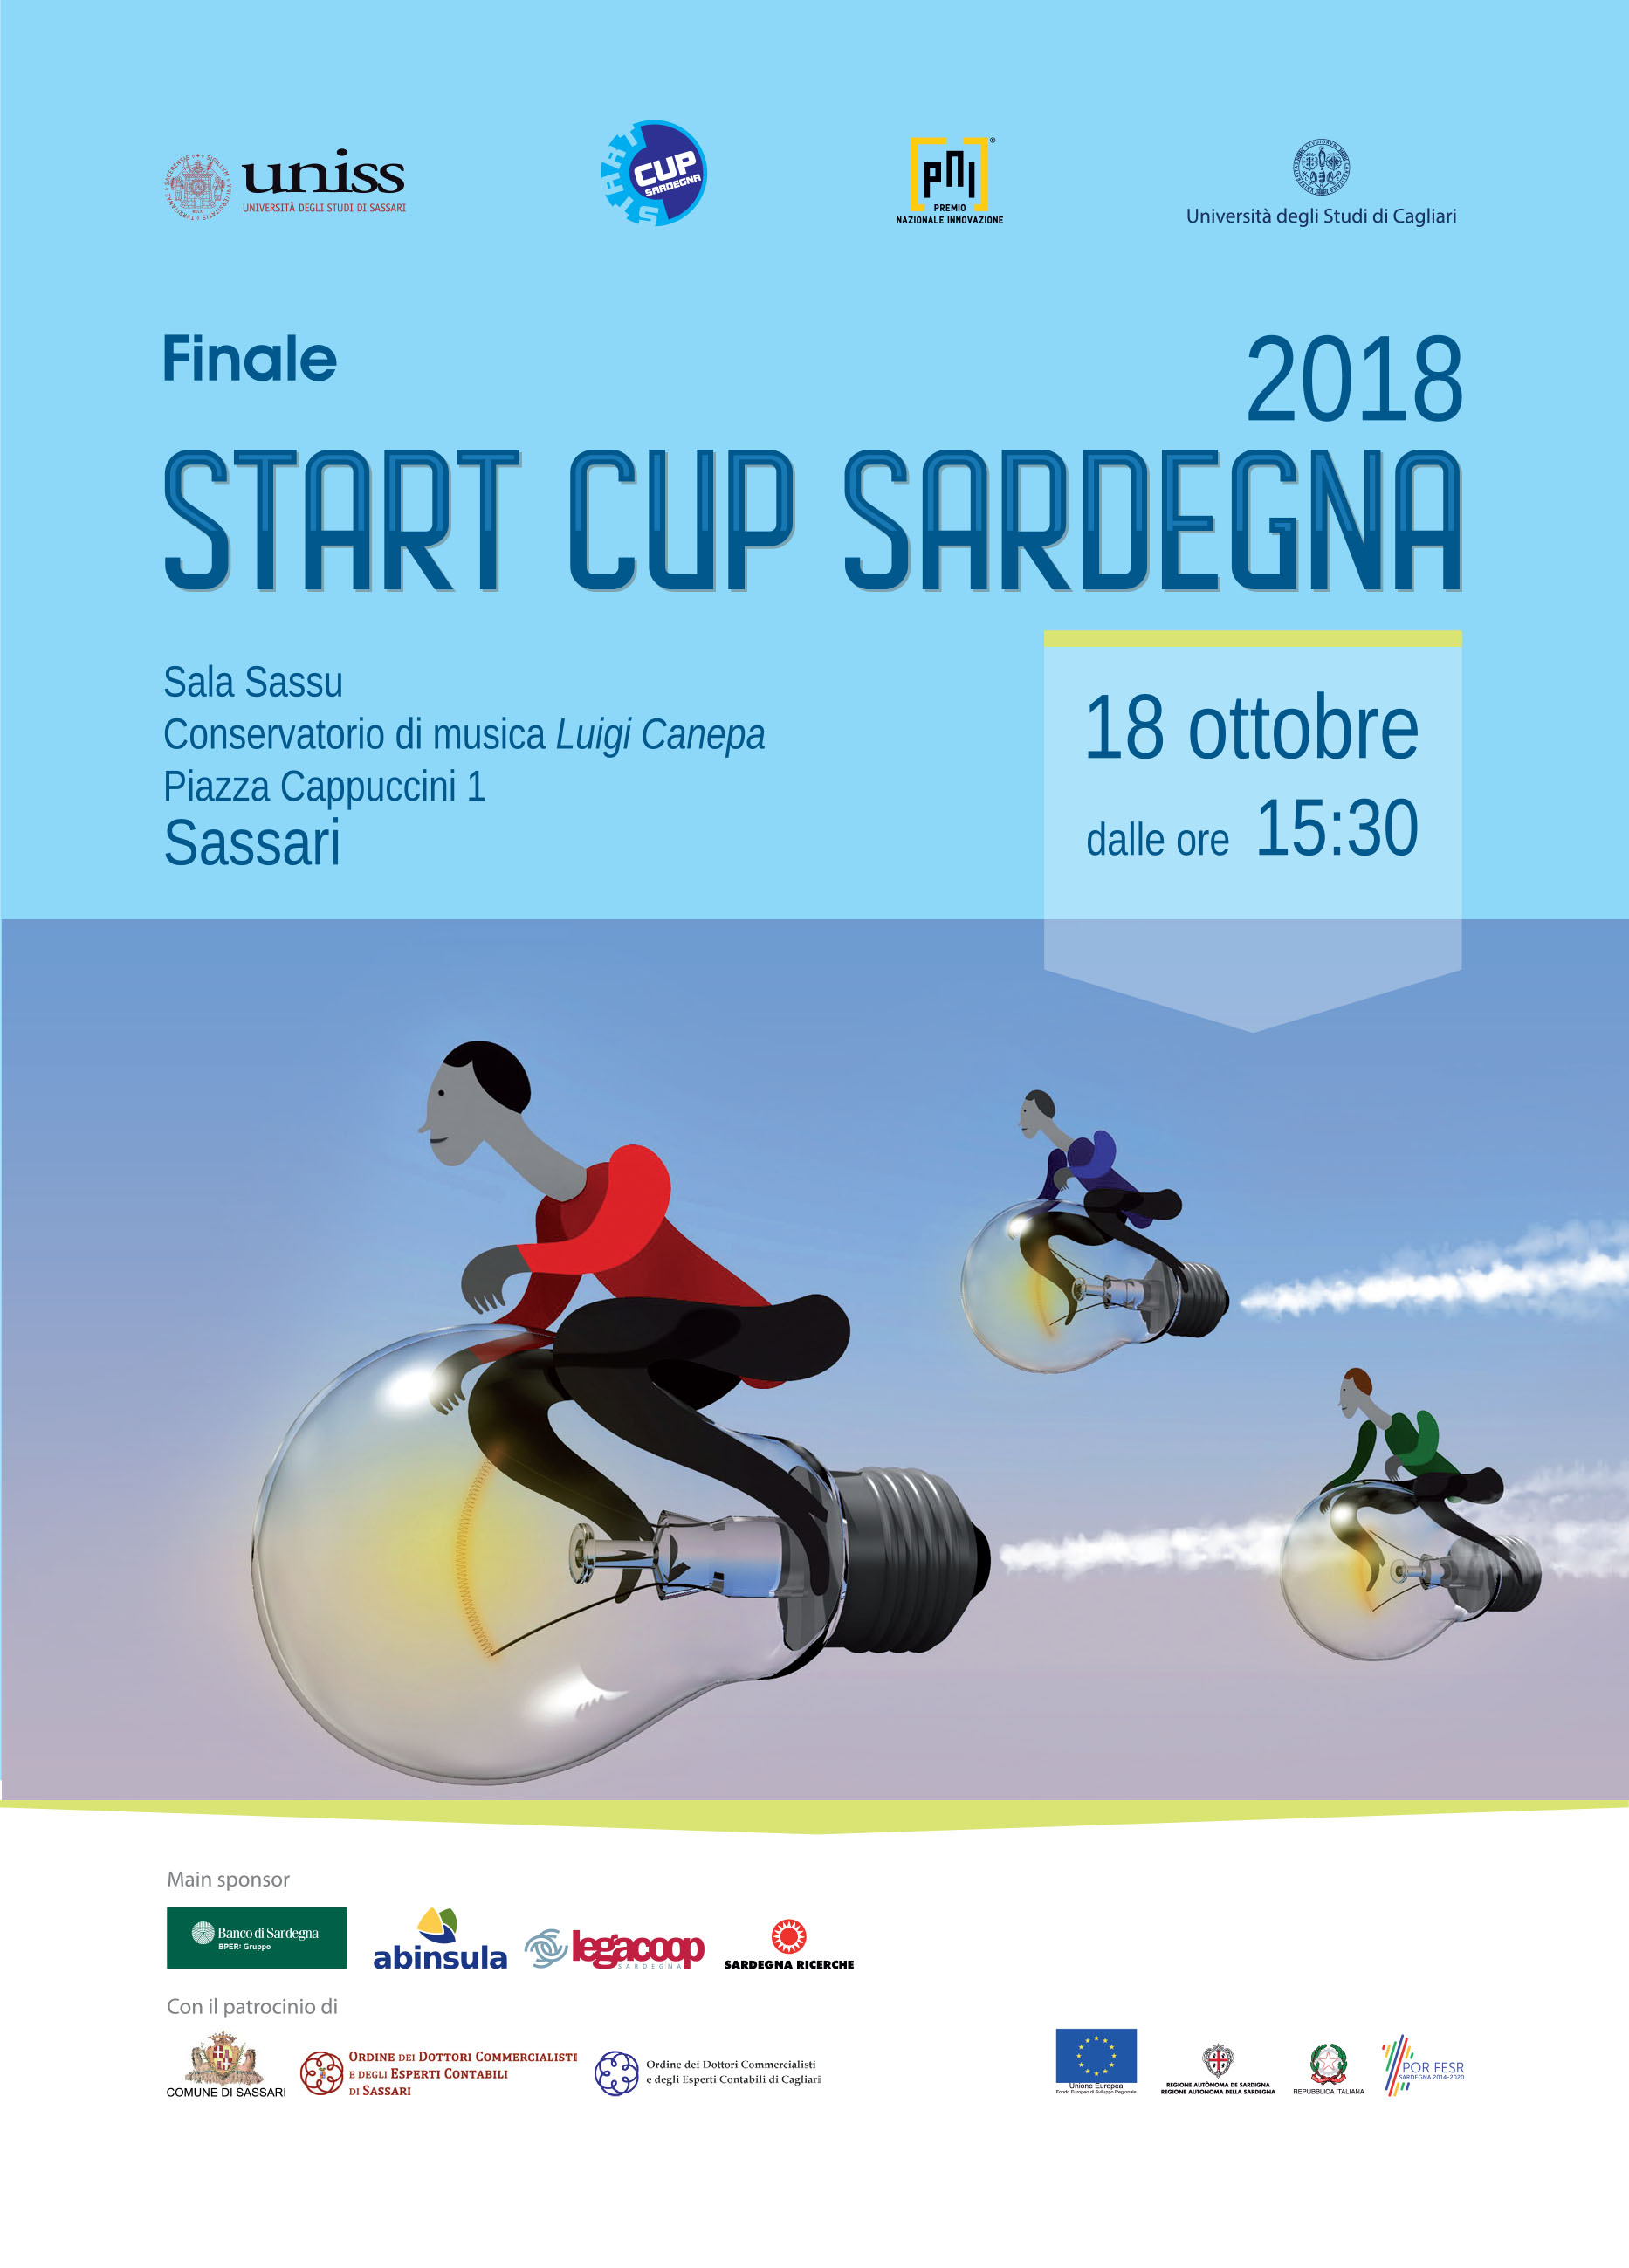 Finale "Start Cup Sardegna 2018"